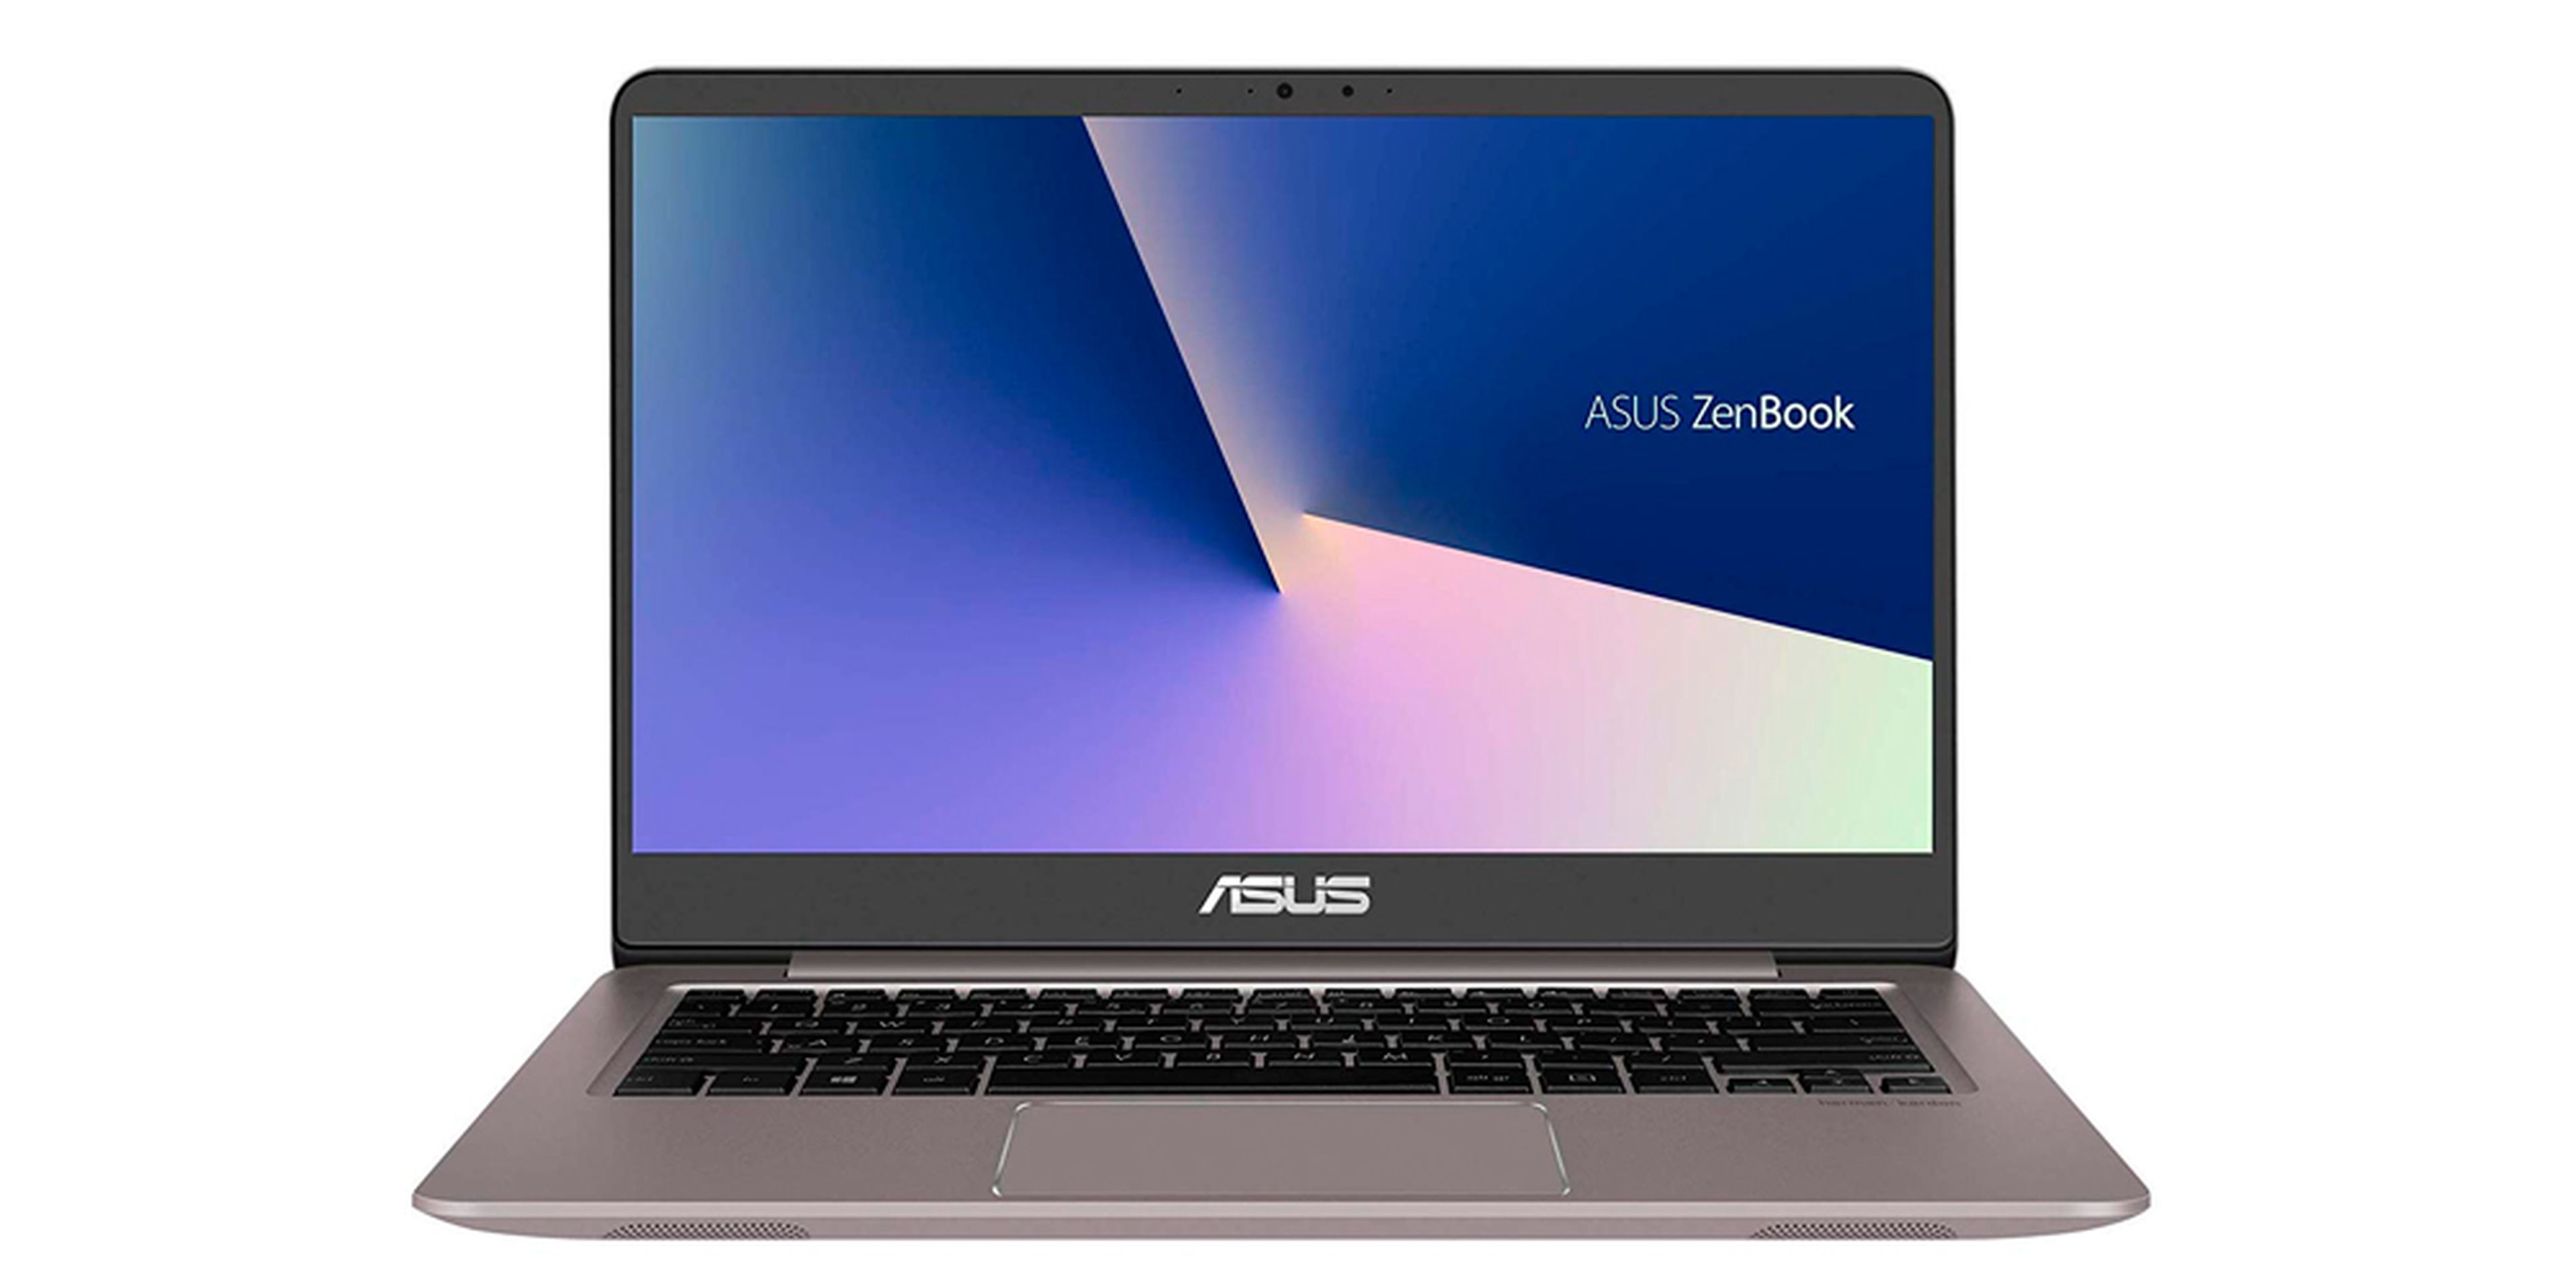 ASUS ZenBook UX410UA-GV028T